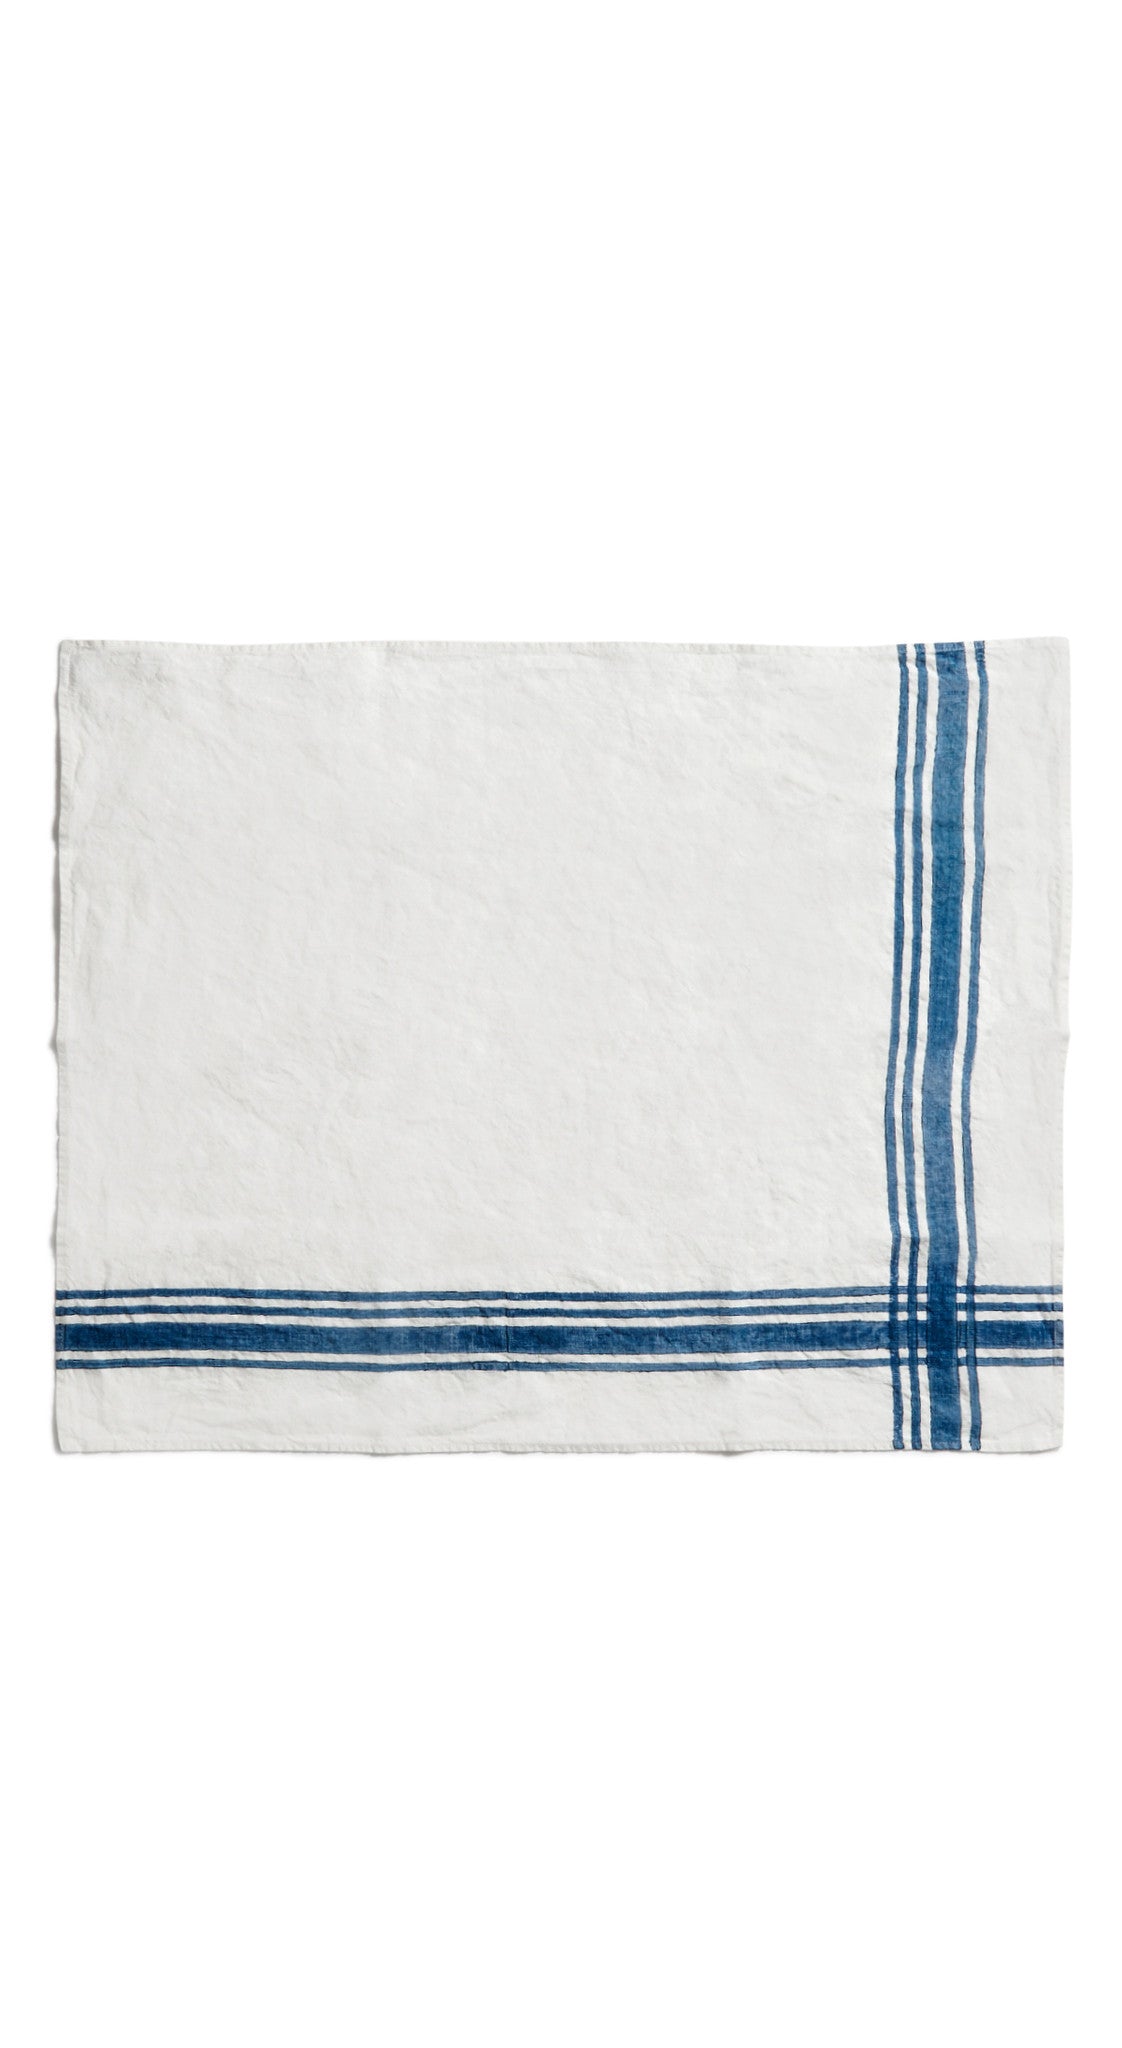 Stripe Linen Tea Towel in Midnight Blue, 55x70cm